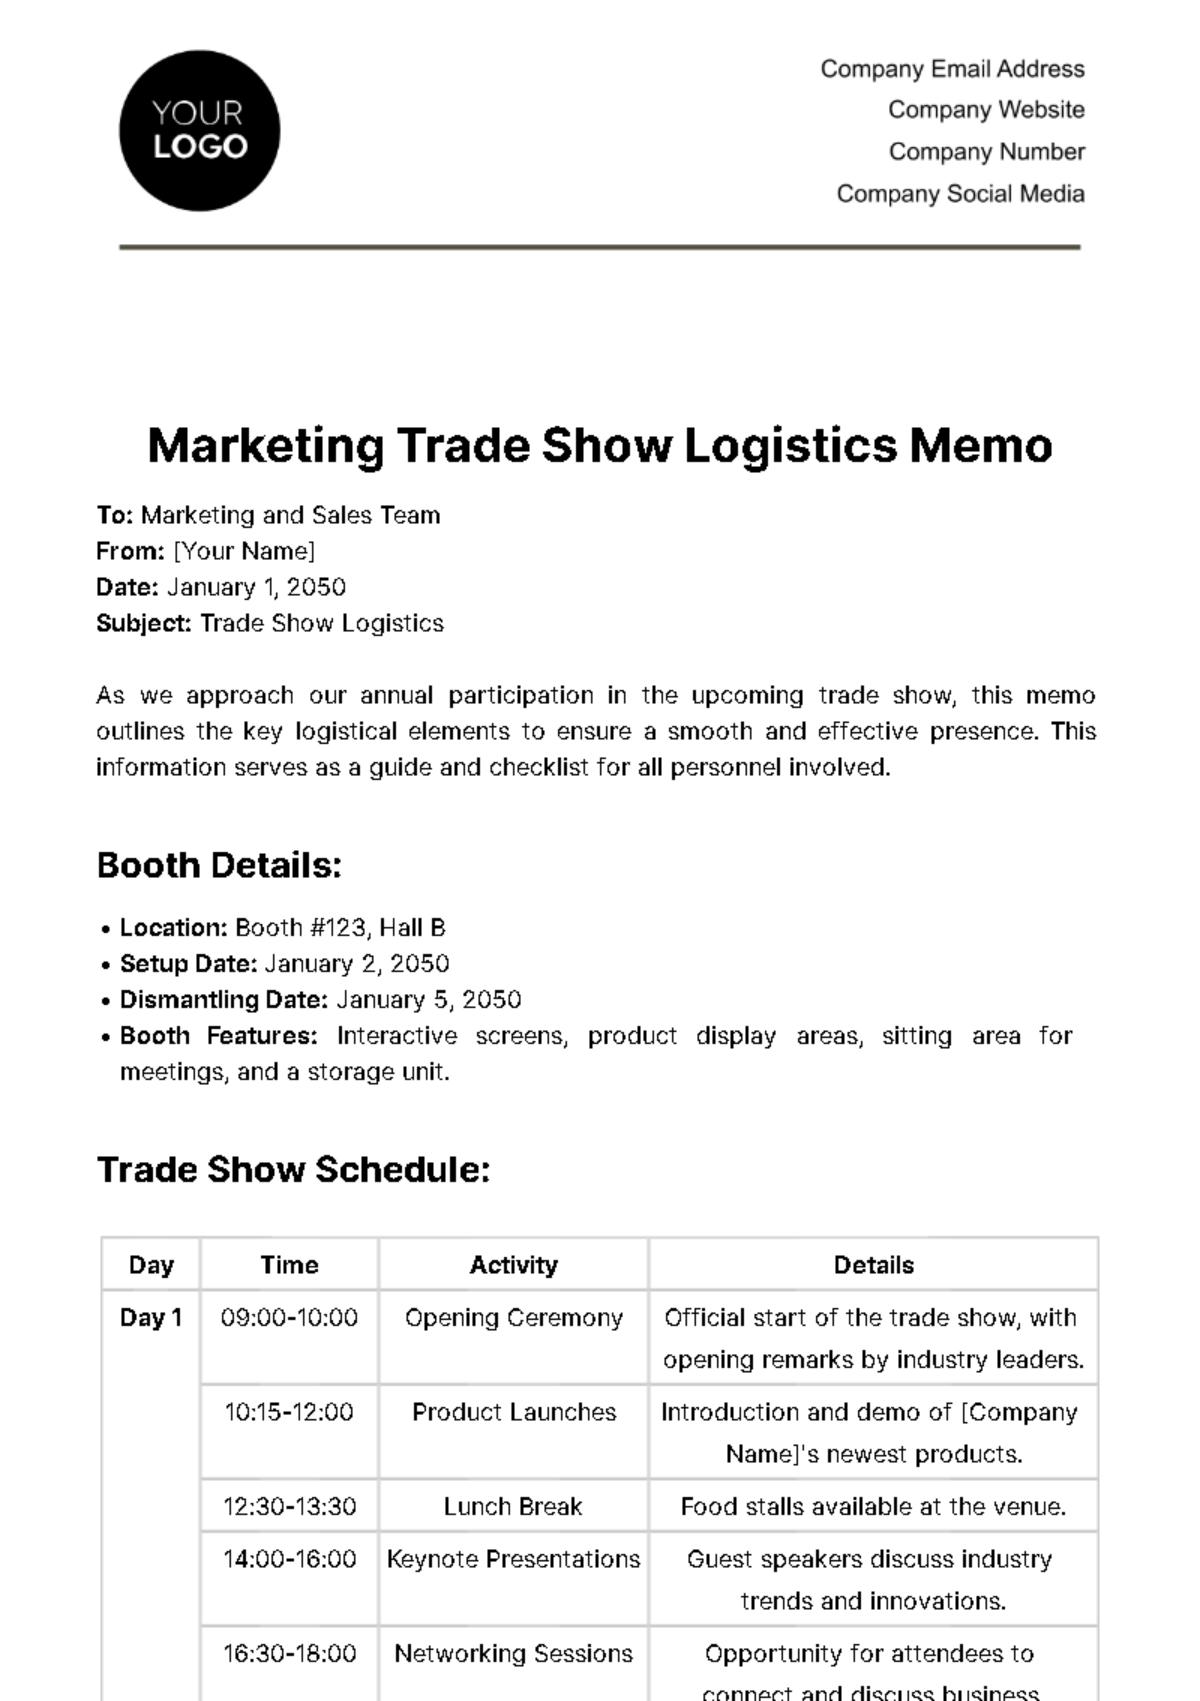 Free Marketing Trade Show Logistics Memo Template